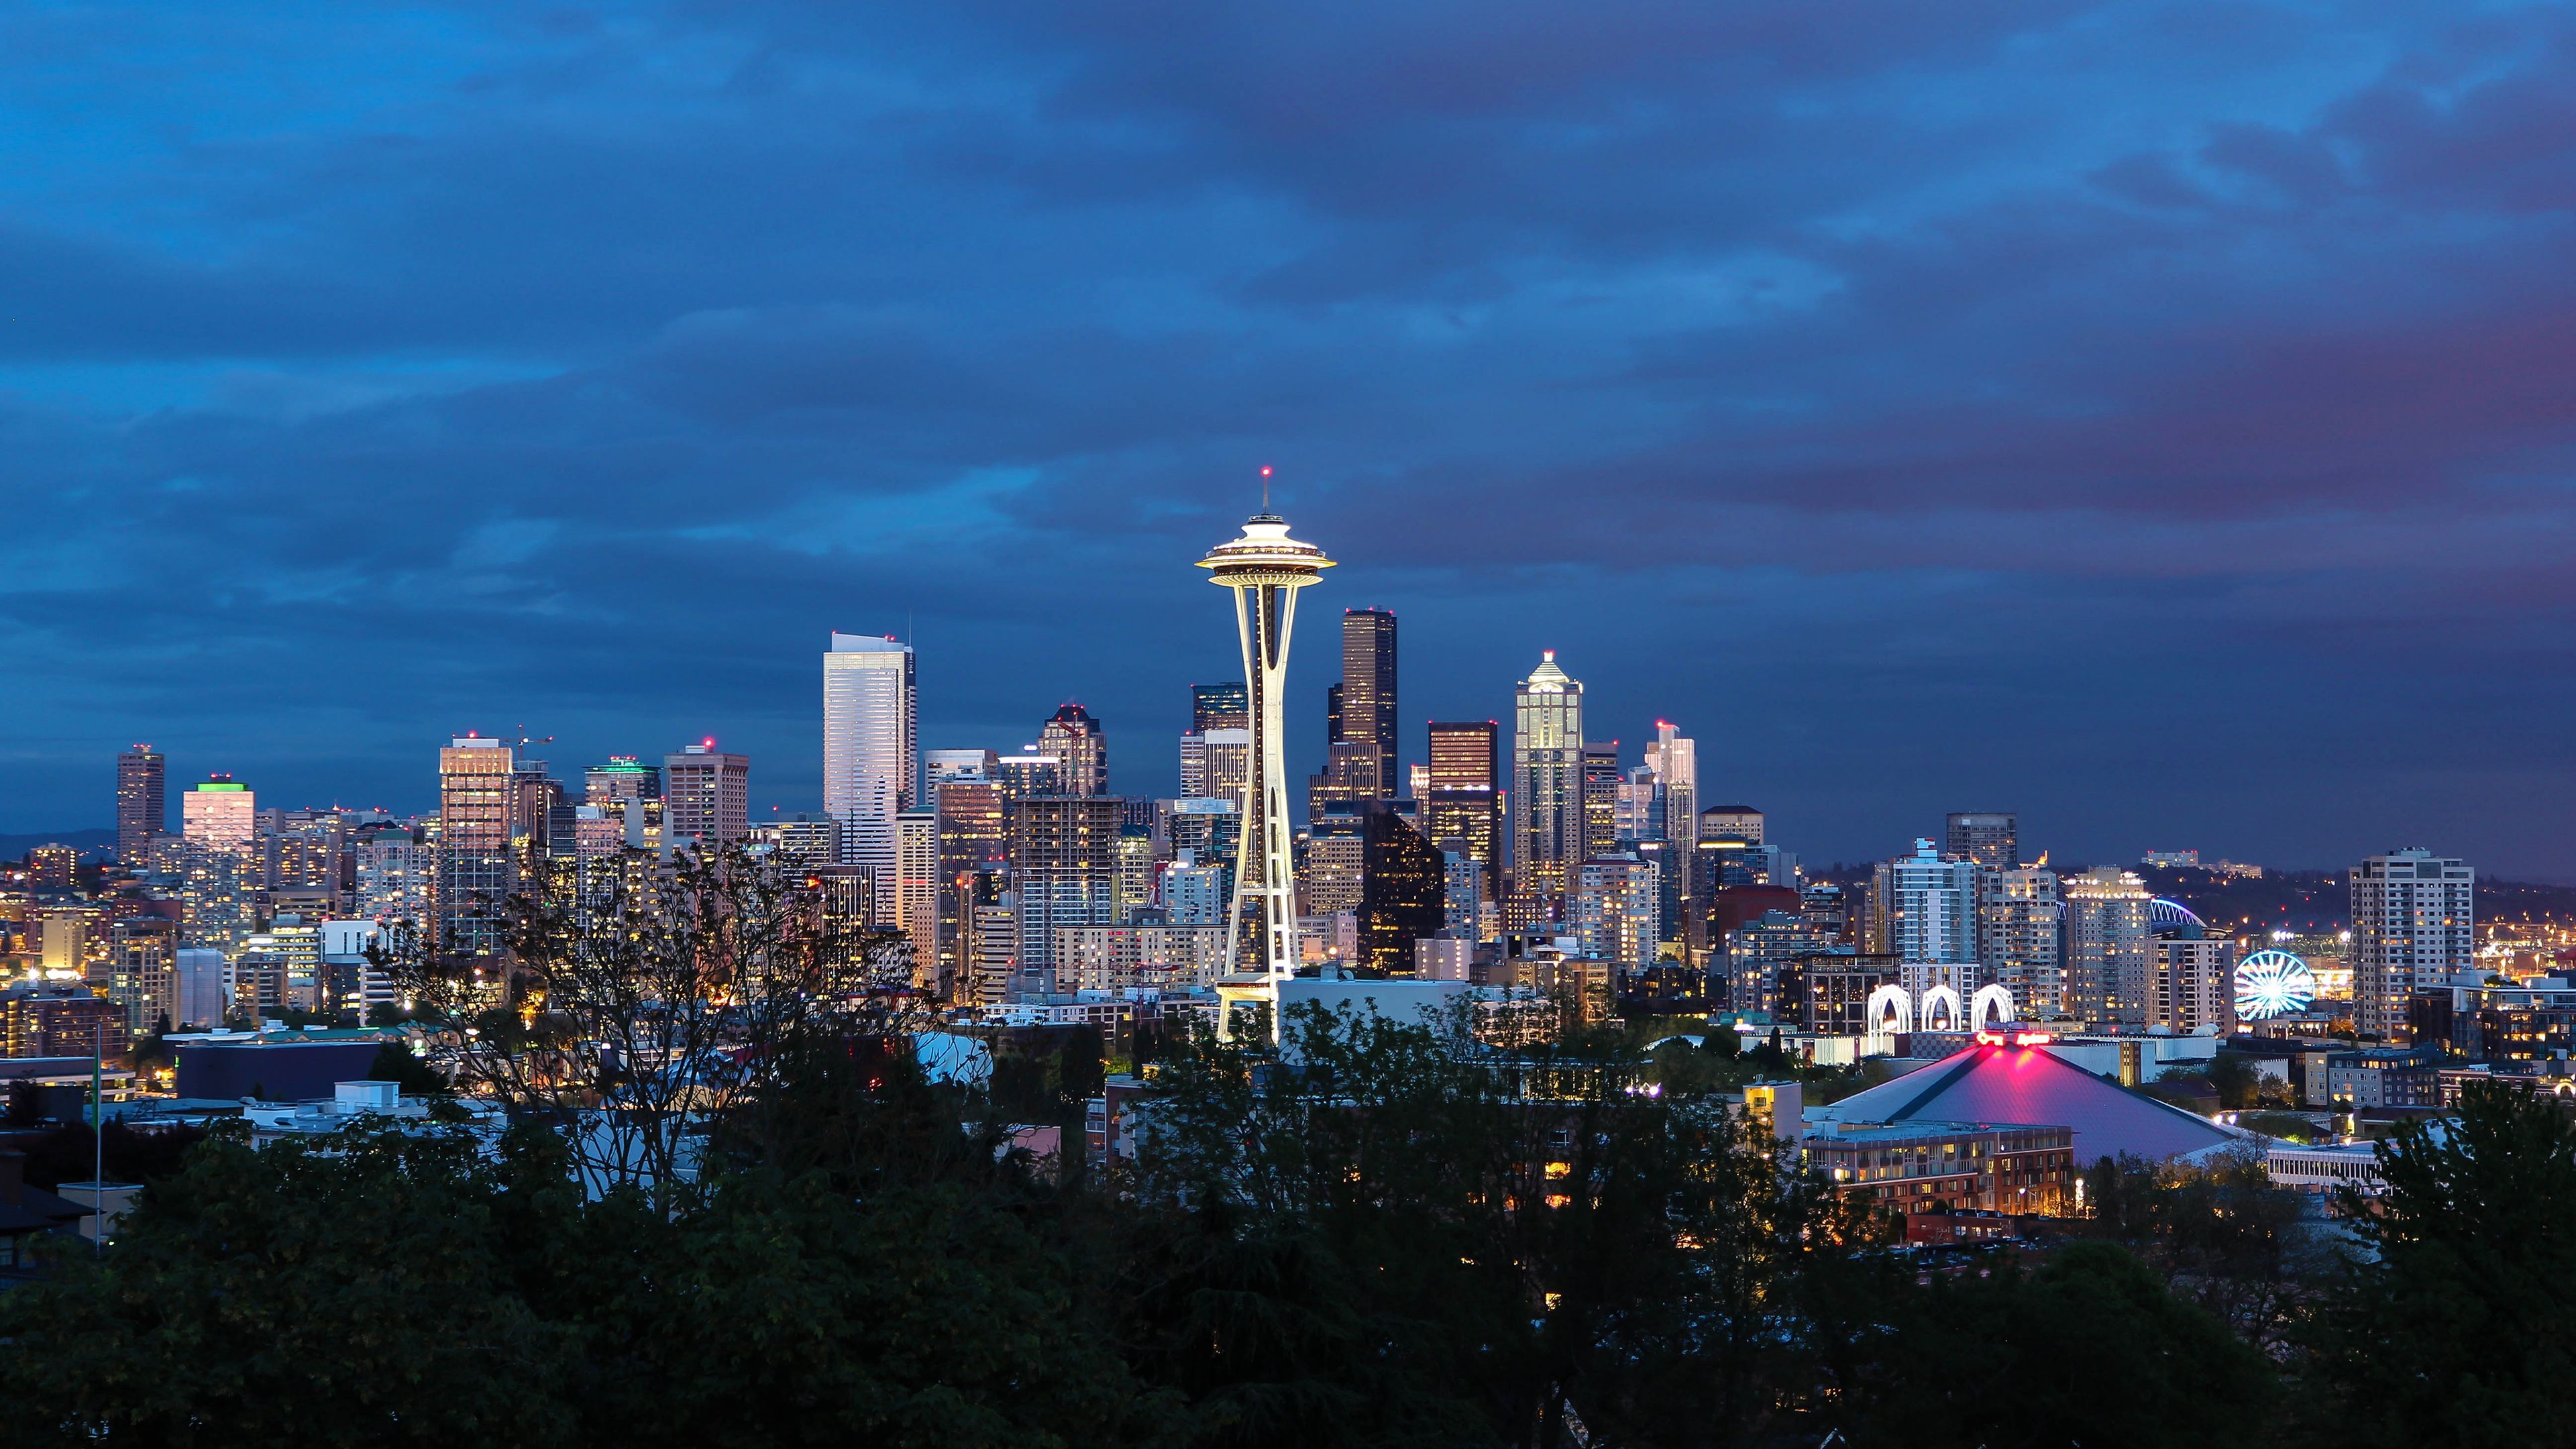 3840x2160 Seattle 4K Wallpaper - Top Free Seattle 4K Background on Wallpape...